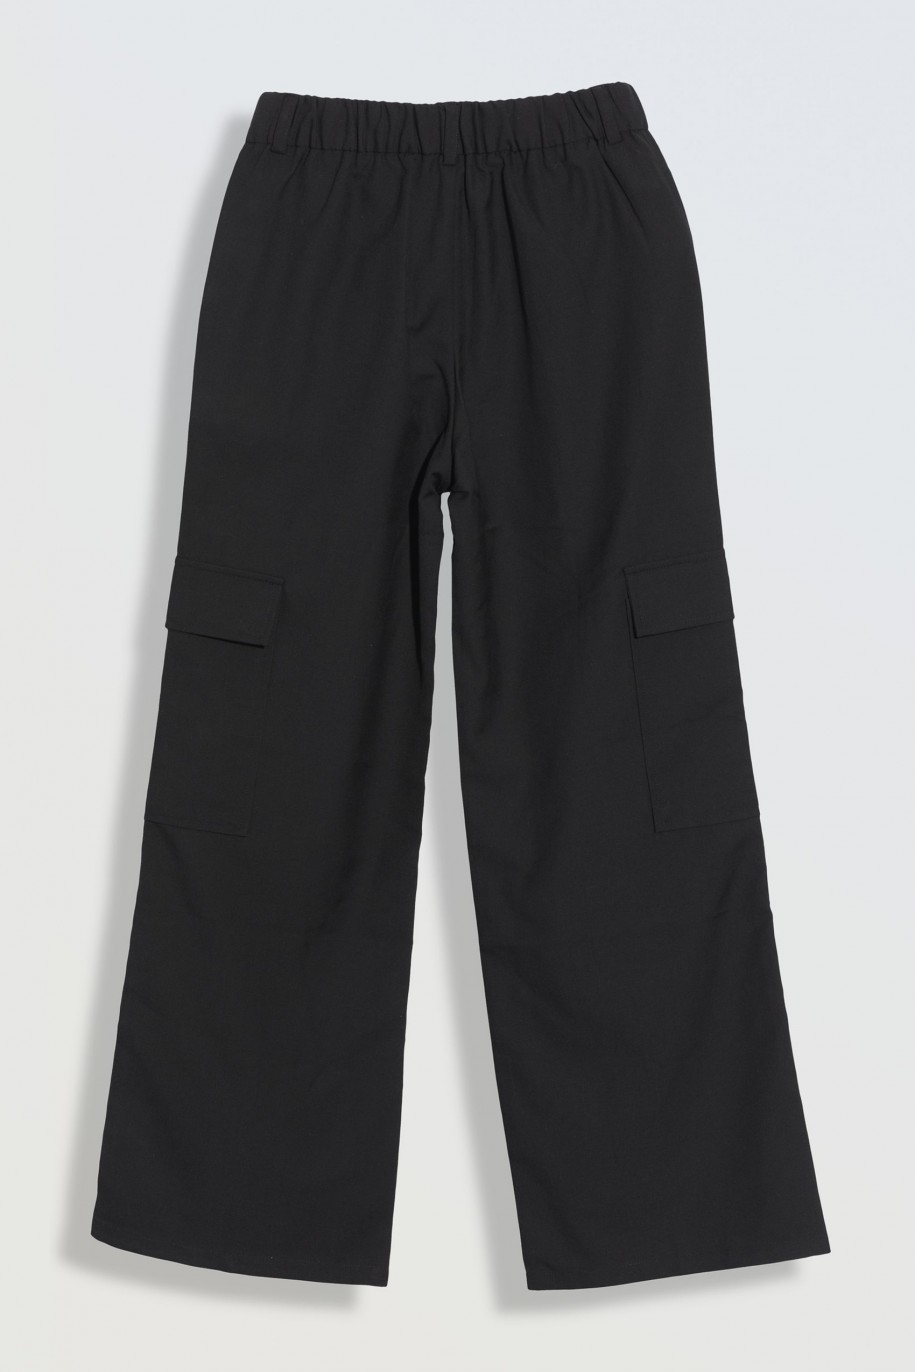 Czarne spodnie z szerokimi nogawkami z przestrzennymi kieszeniami - 46355